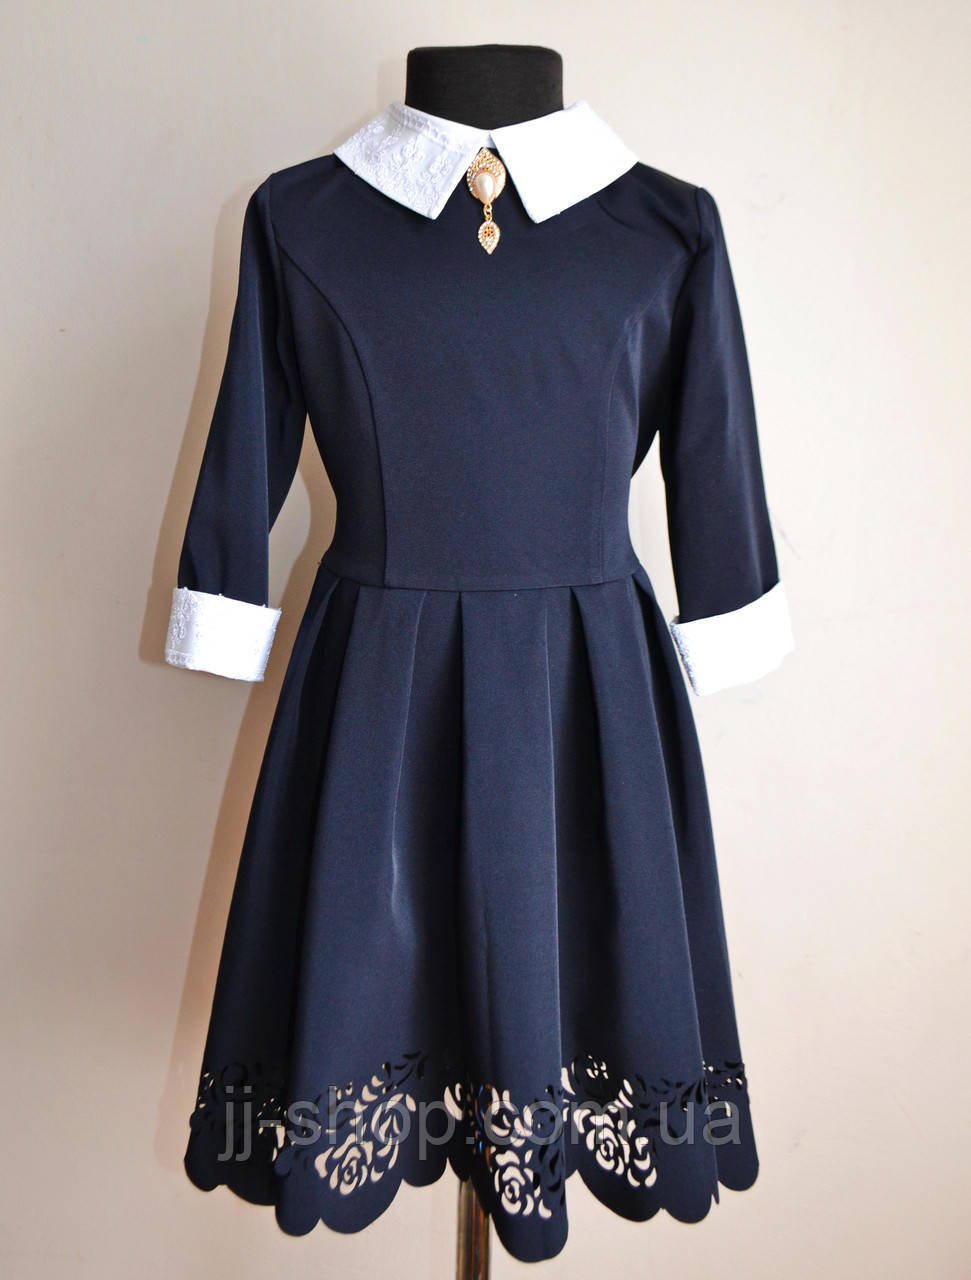 Дитяче шкільне плаття для дівчаток 5-12 років синього кольору, знімний комір